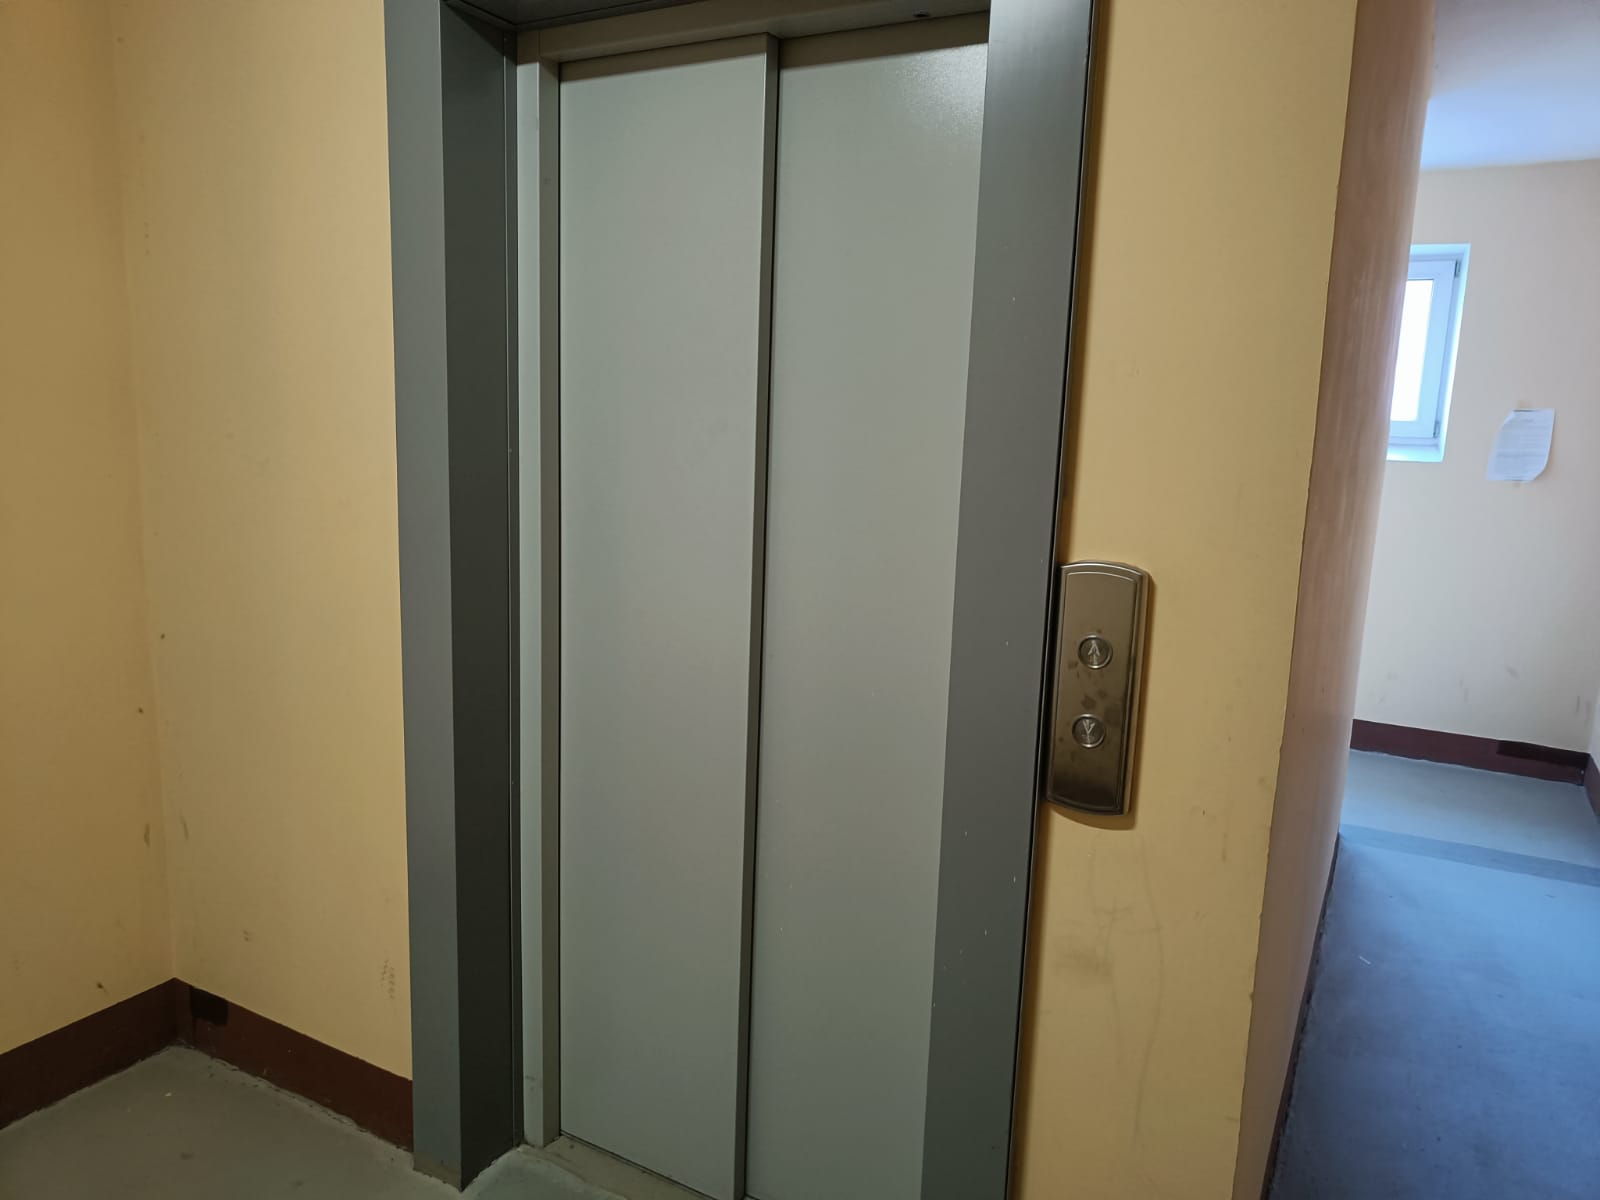 Пристройка с лифтом появится в доме-интернате для пожилых амурчан